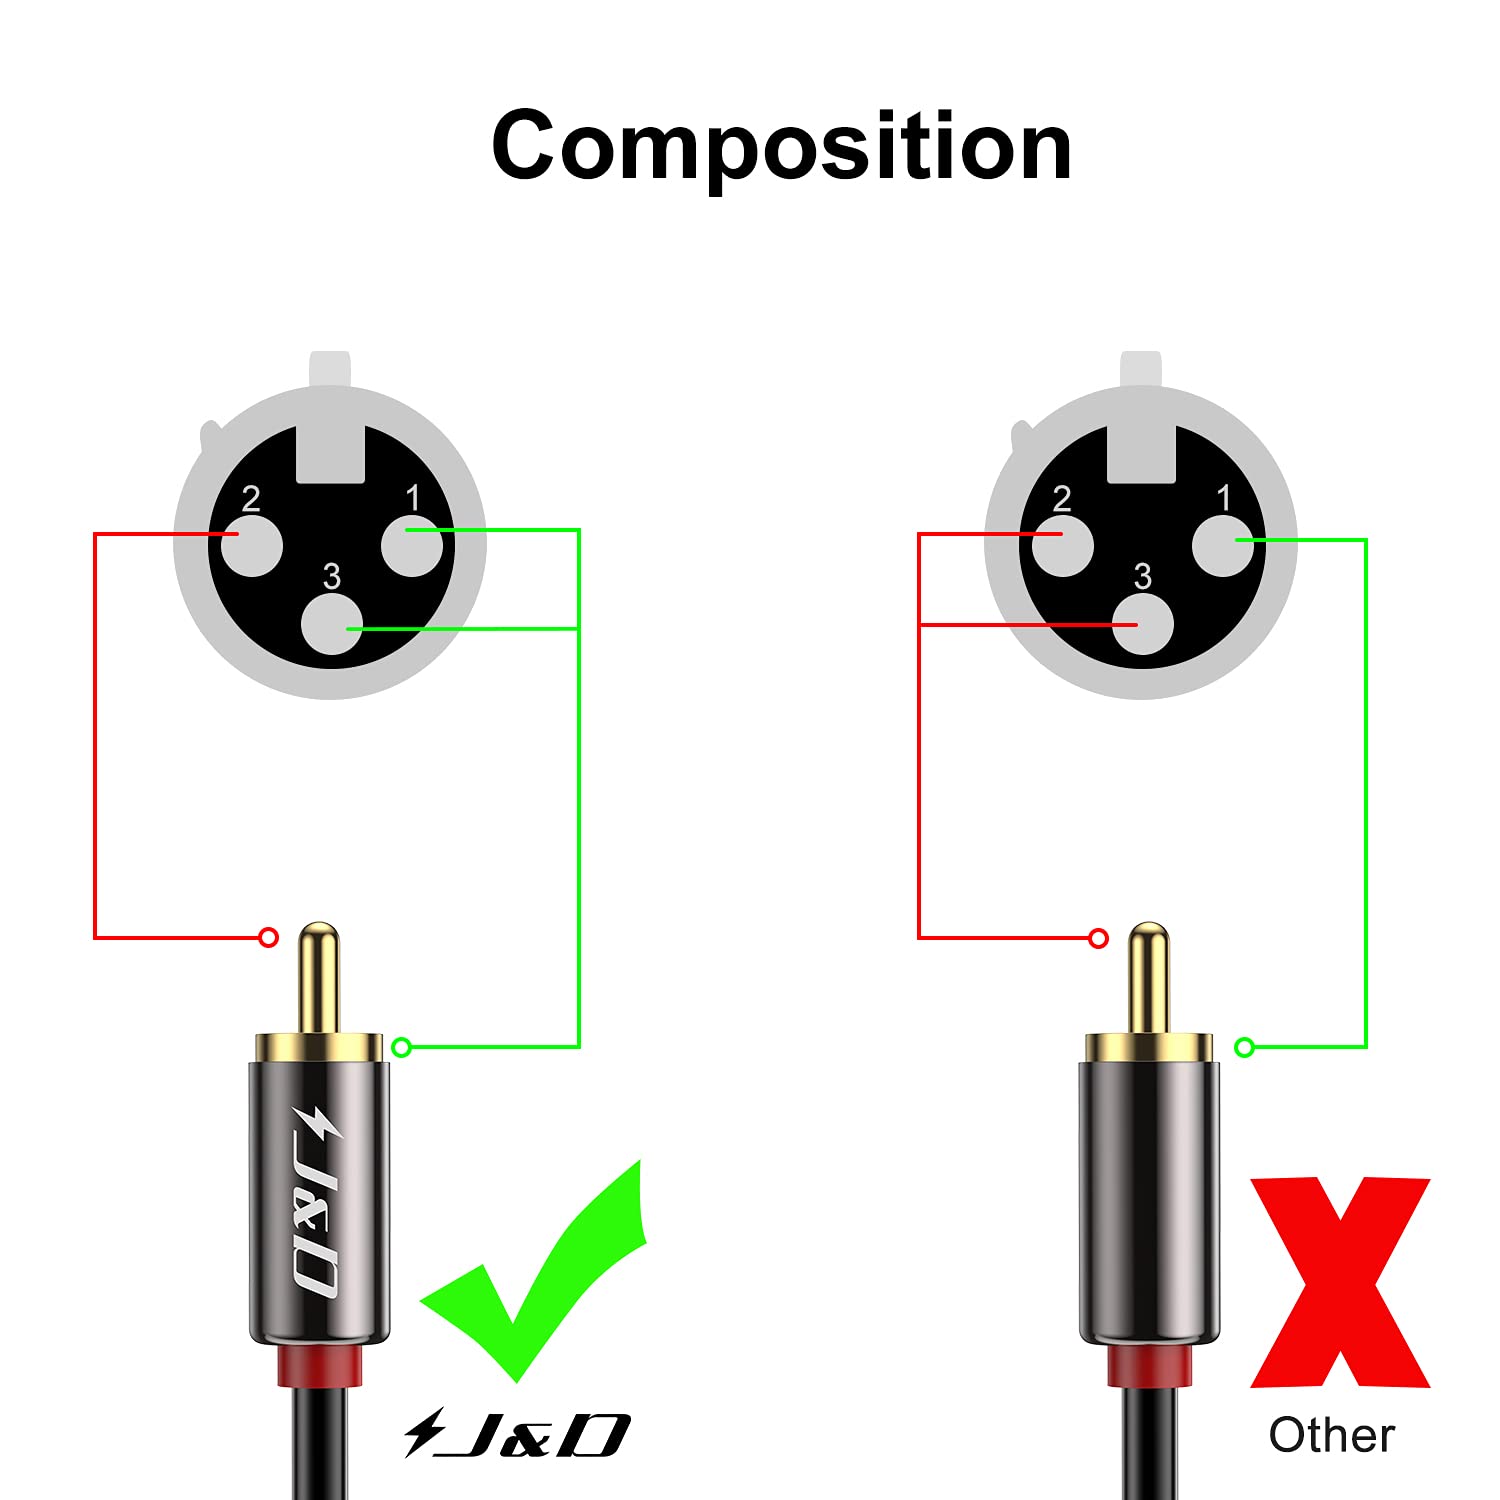 XLR vs. RCA Cables